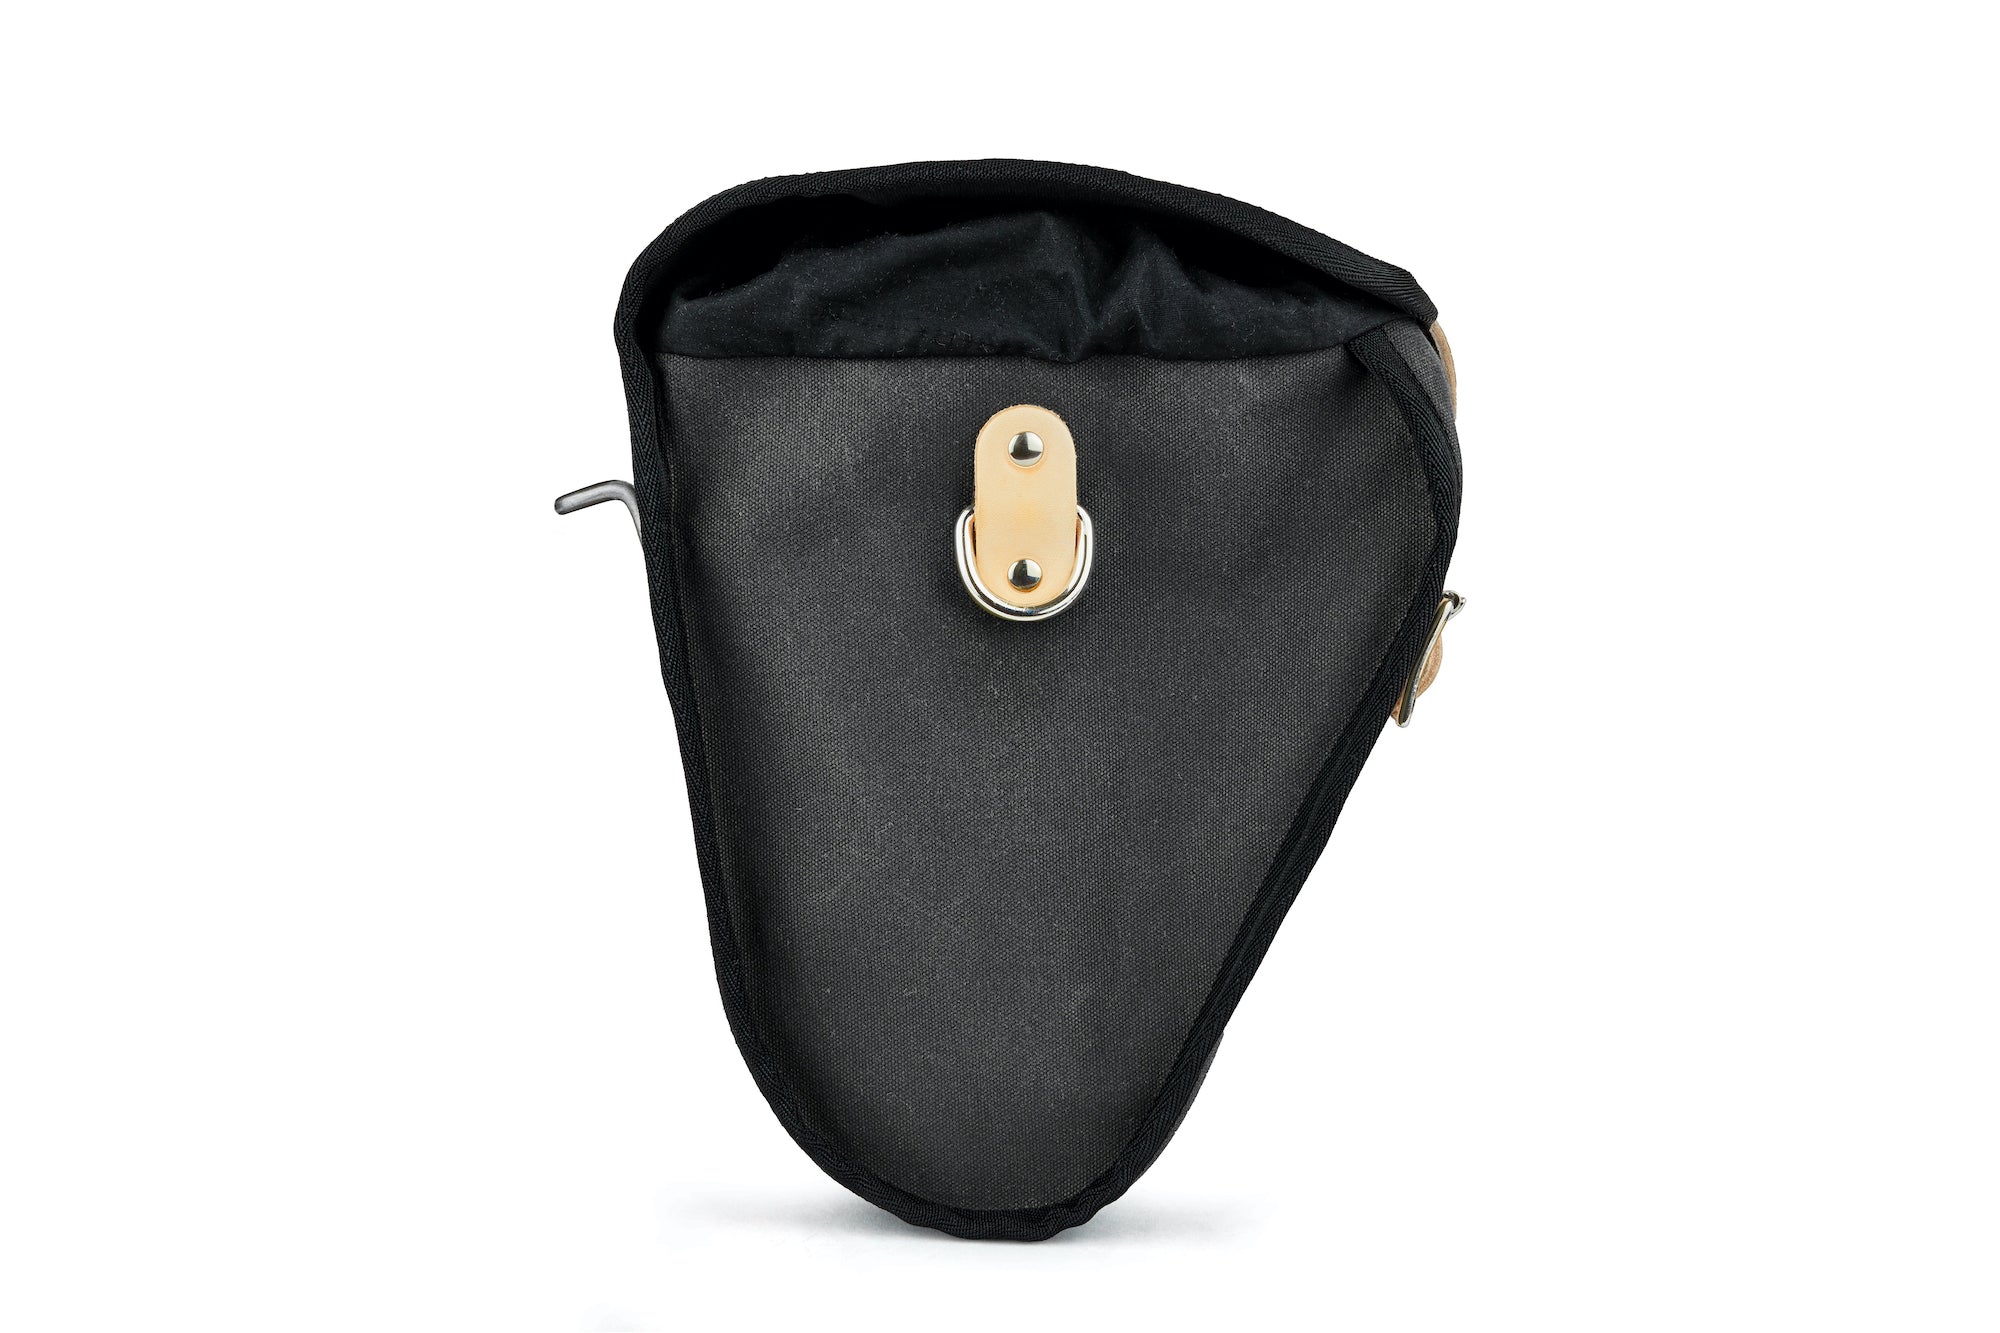 Compact saddle or handlebar bag for bike touring and Bromptons